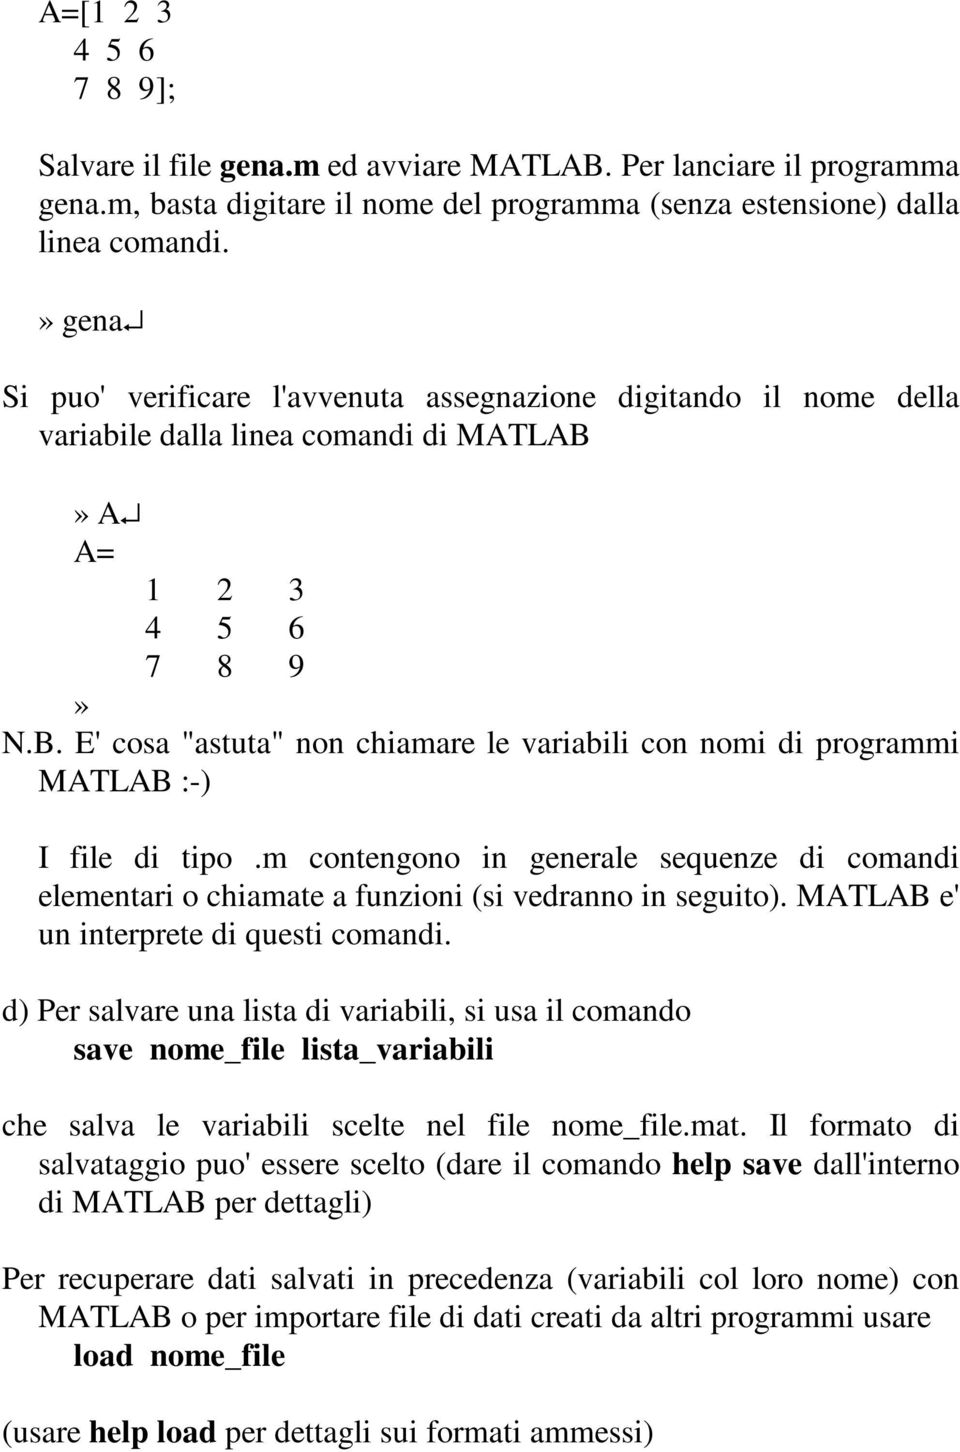 A A= 1 2 3 4 5 6 7 8 9» N.B. E' cosa "astuta" non chiamare le variabili con nomi di programmi MATLAB :-) I file di tipo.